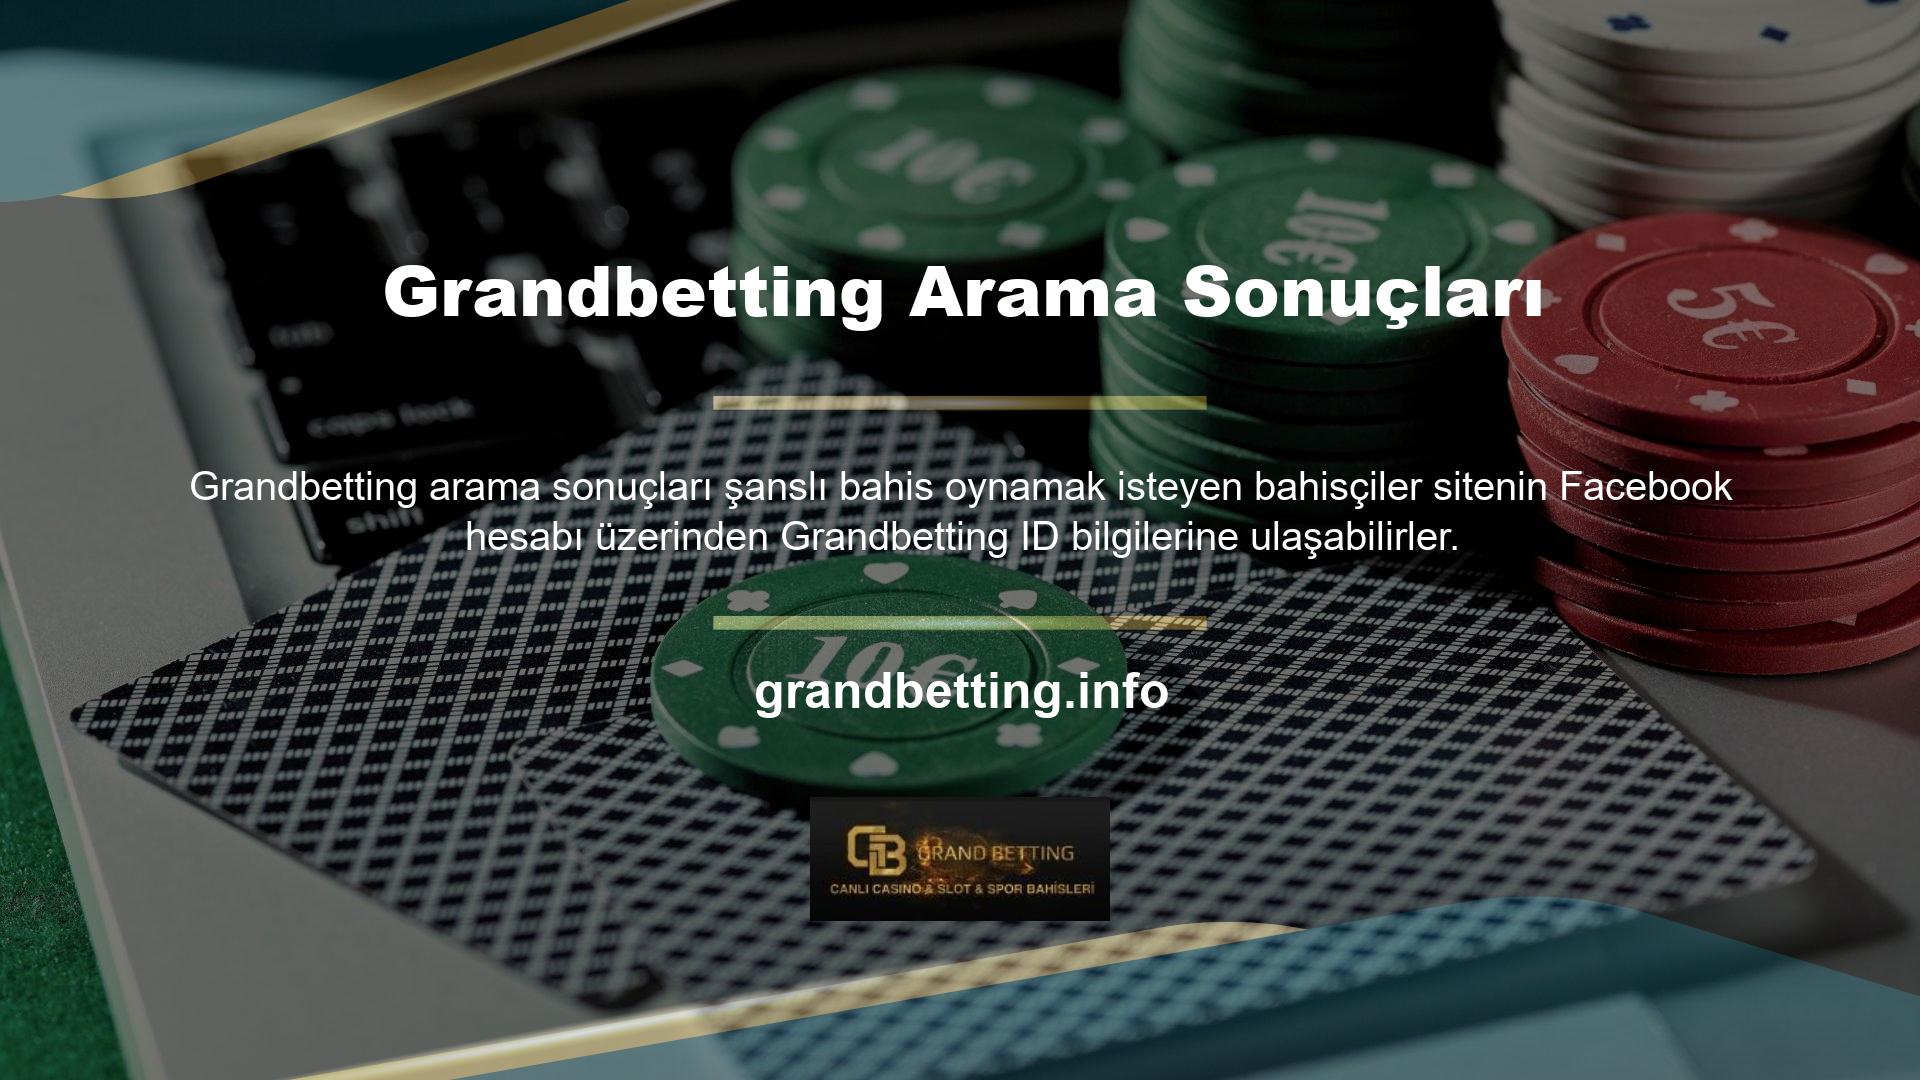 Grandbetting arama sonuçları, tüm hesap değişikliklerini paylaştı ve ayrıca casino meraklıları için yeni bir forum sayfasında paylaşımlar sağladı